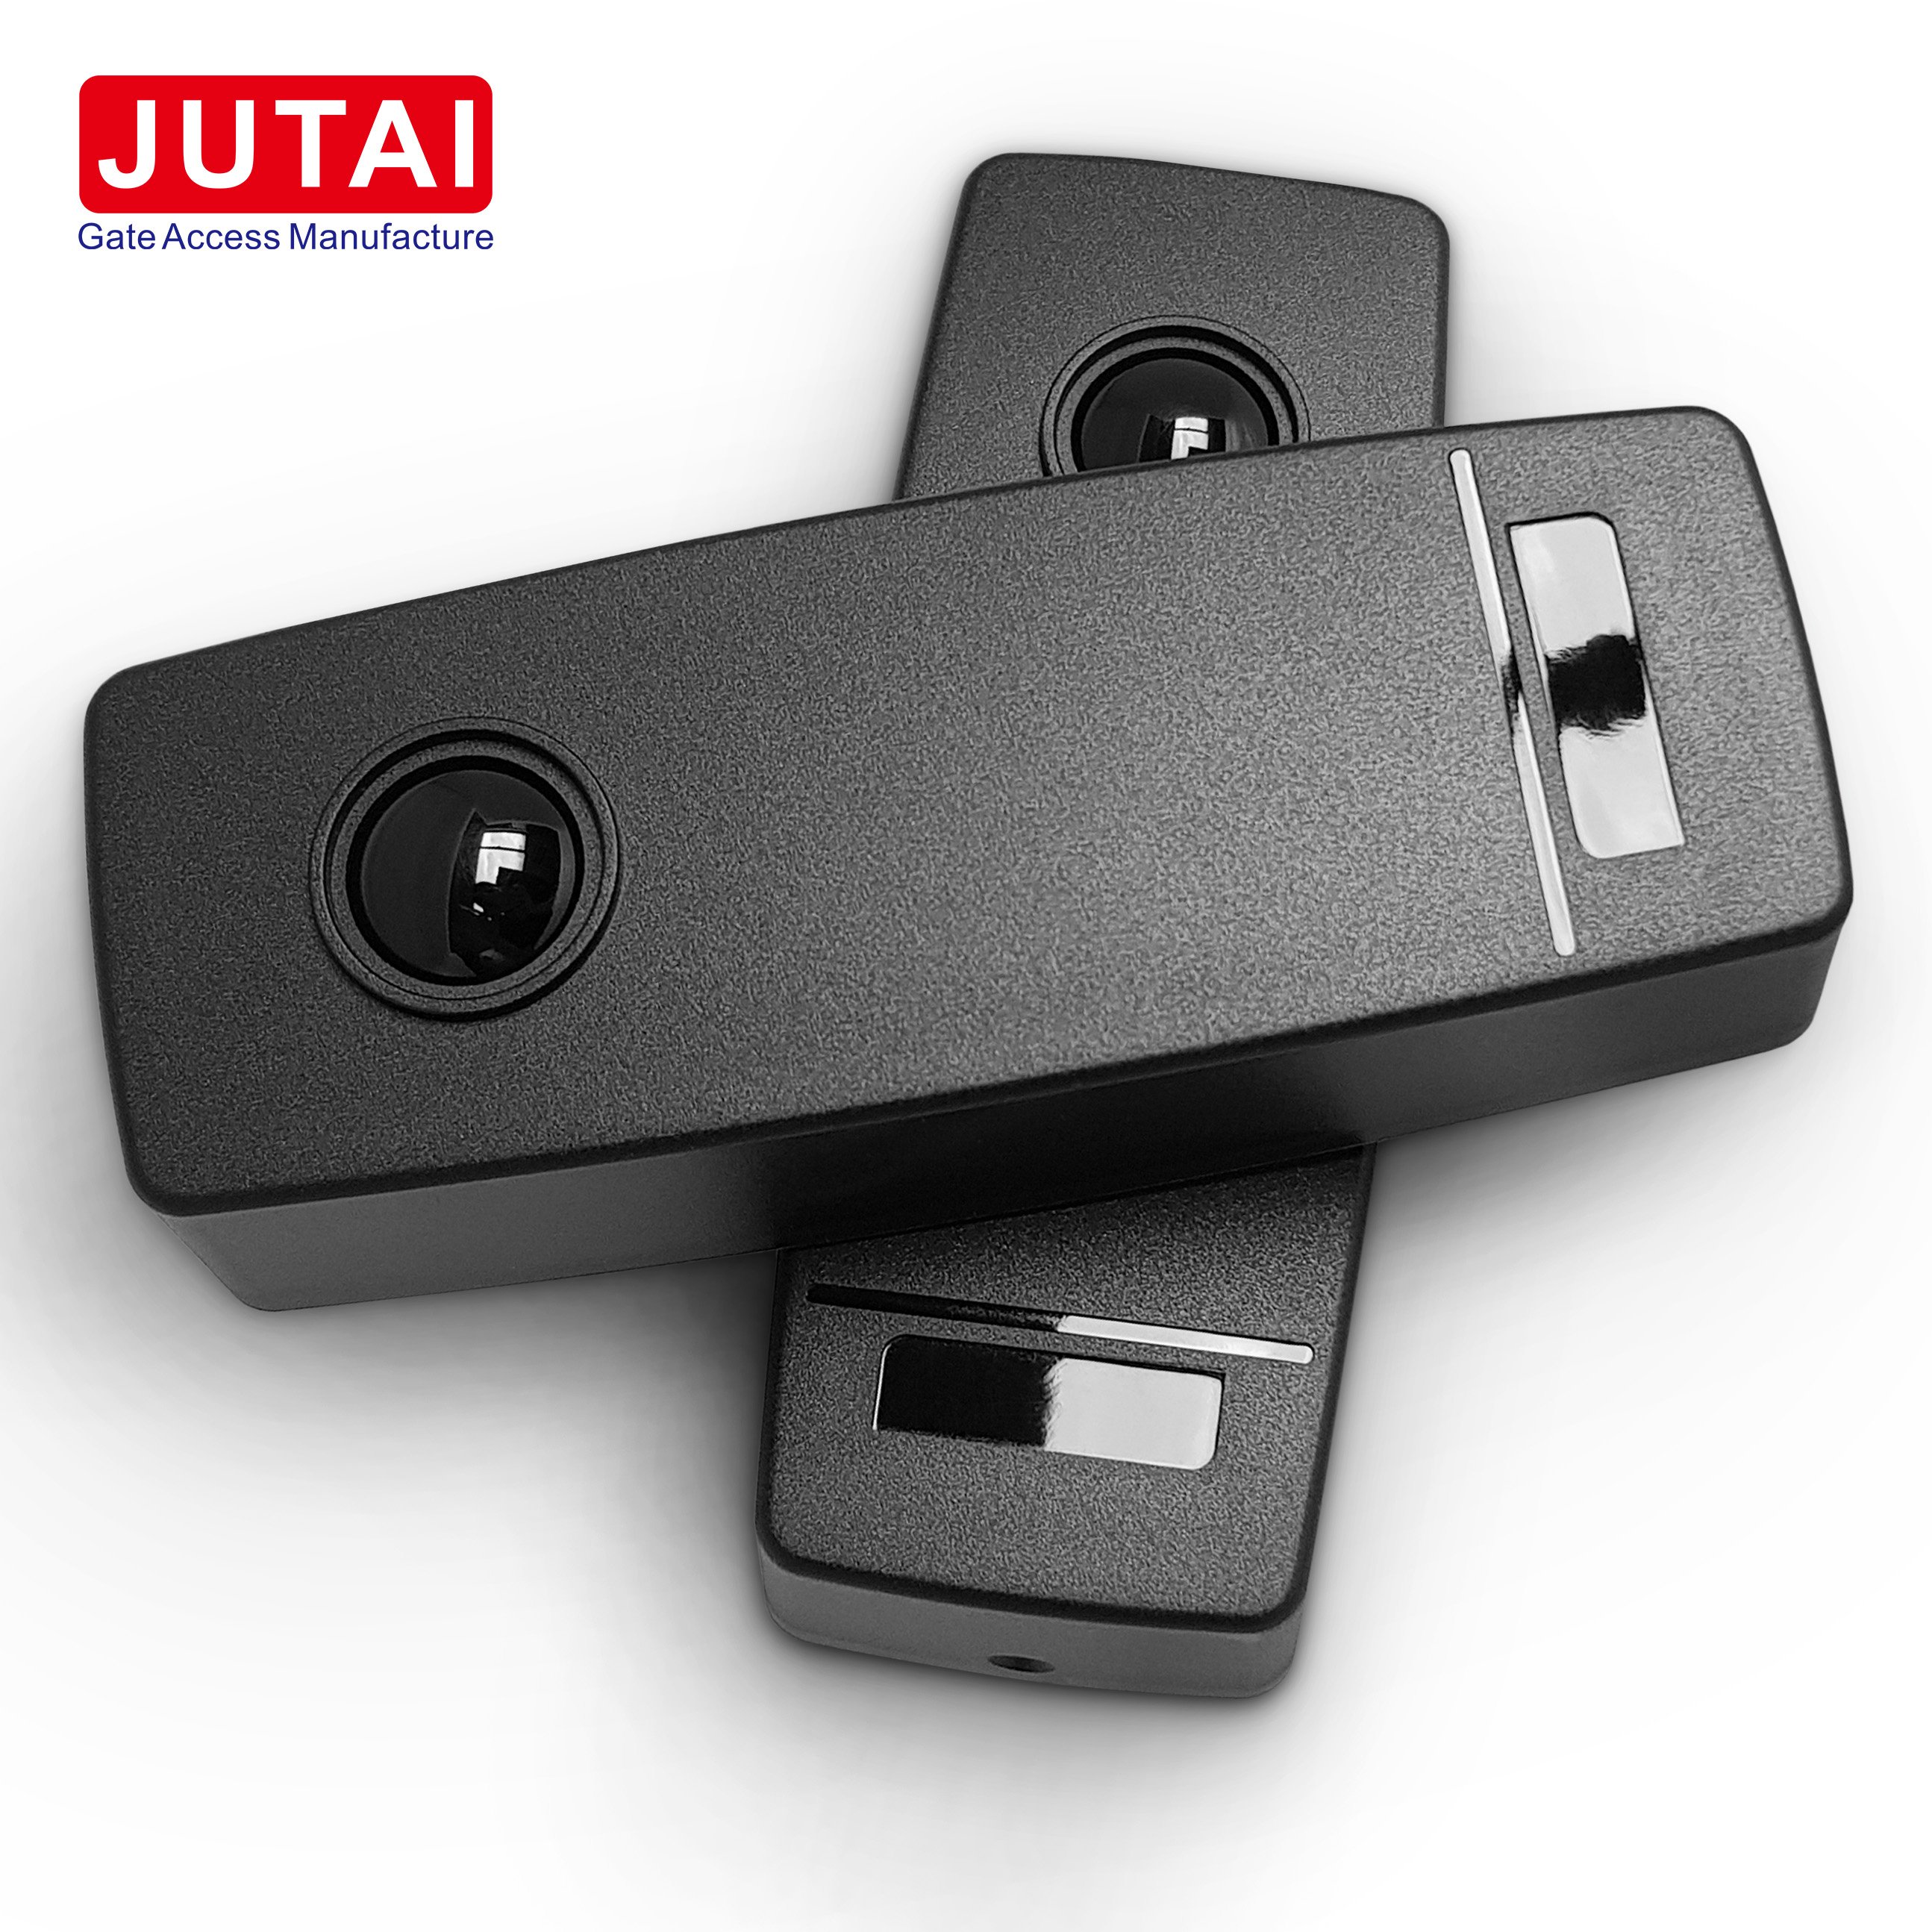 JUTAI WIS-30 Automatischer Gate-Beam-Fotozellensensor